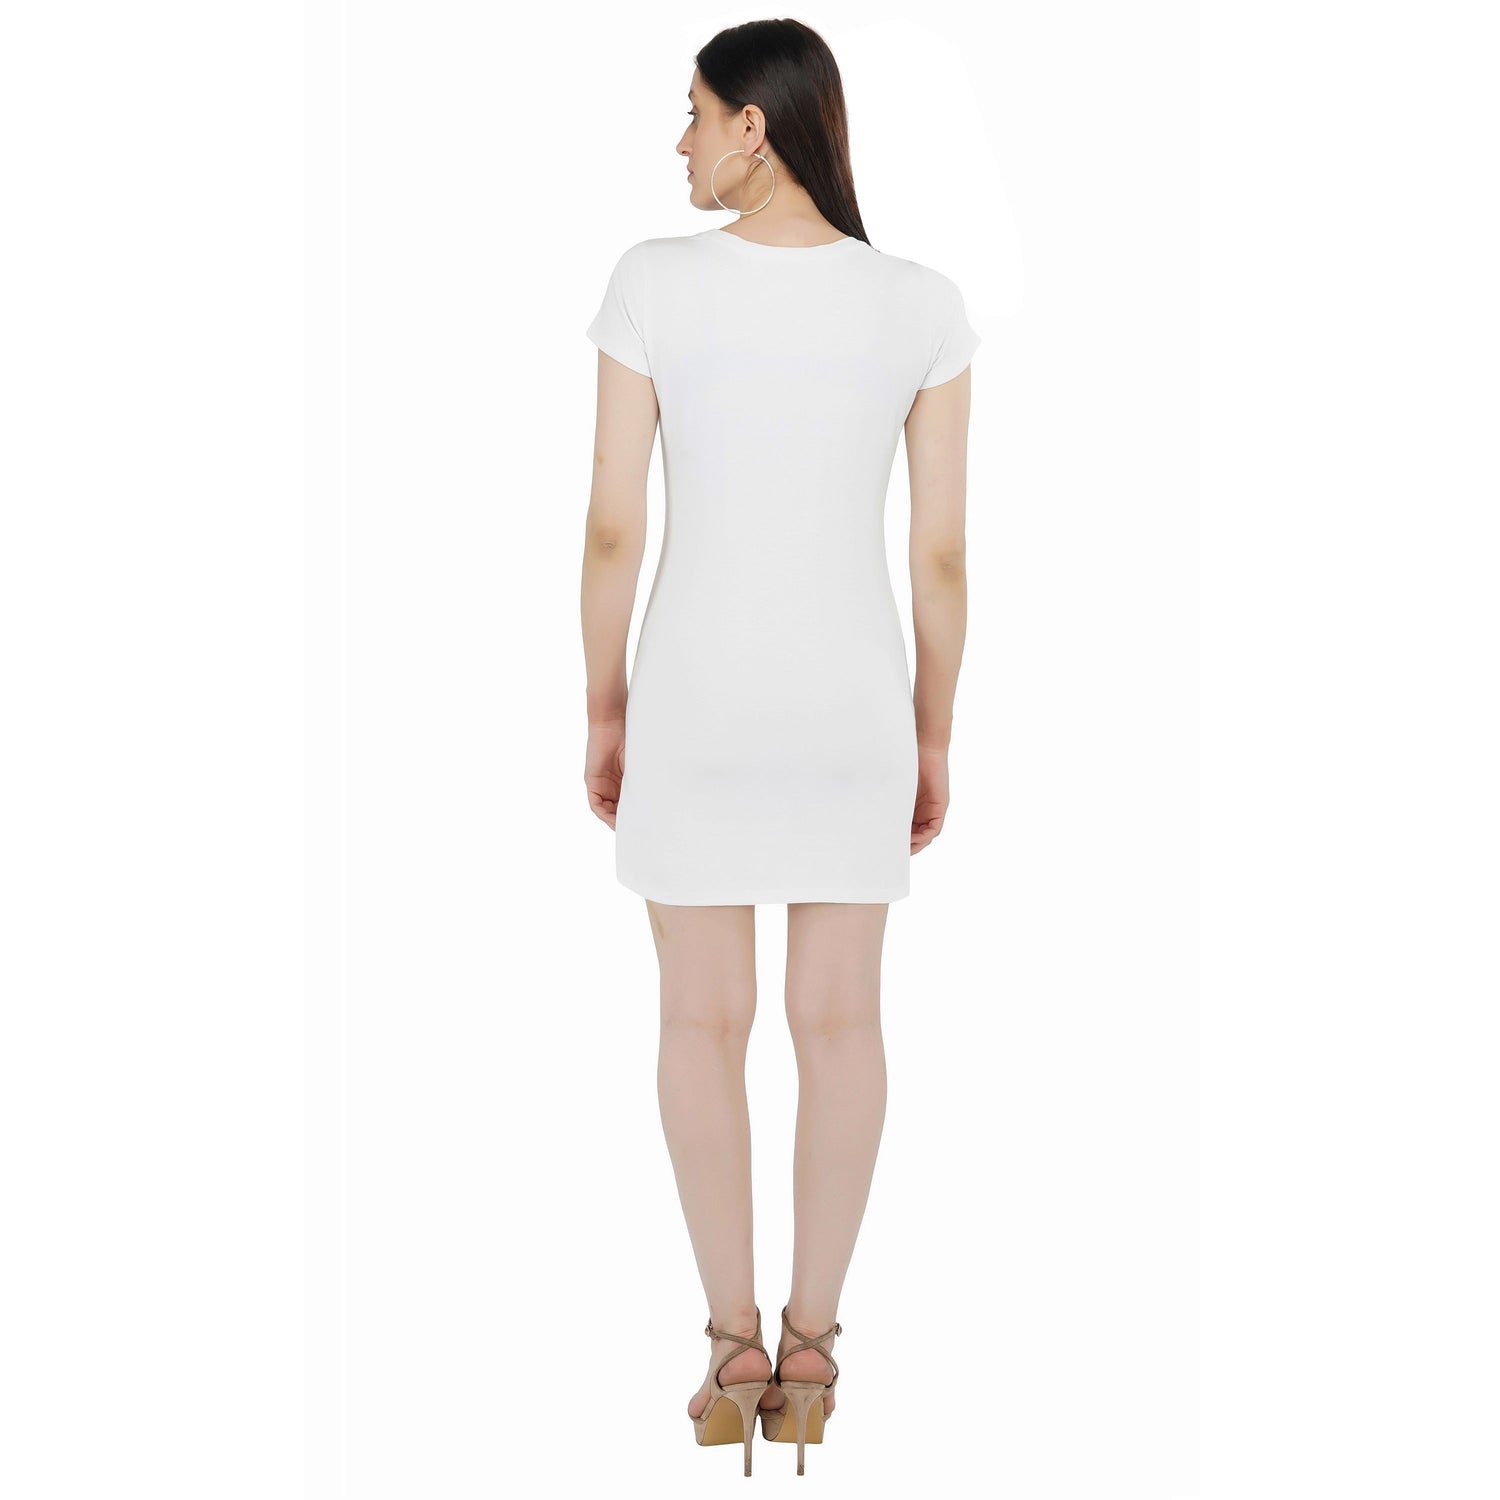 SLAY. Women's Golden Crystal Embellished White T-shirt Dress-clothing-to-slay.myshopify.com-Dress